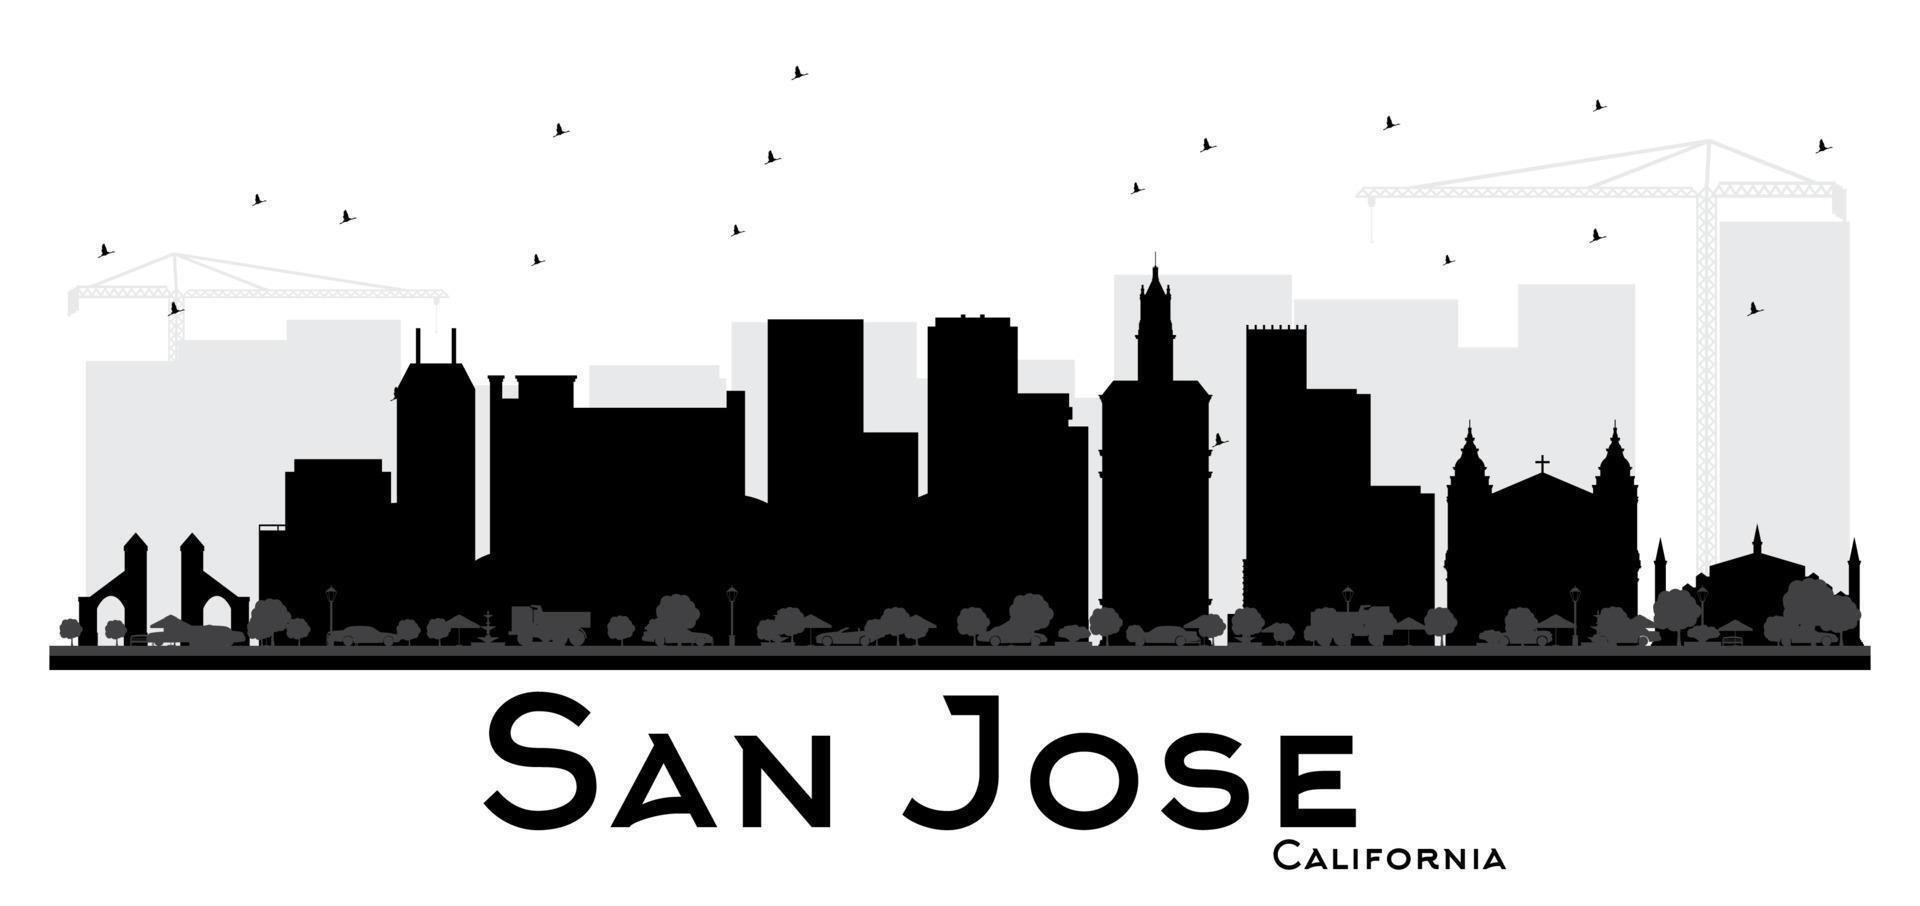 san jose kalifornien stadt skyline schwarz-weiß silhouette. vektor